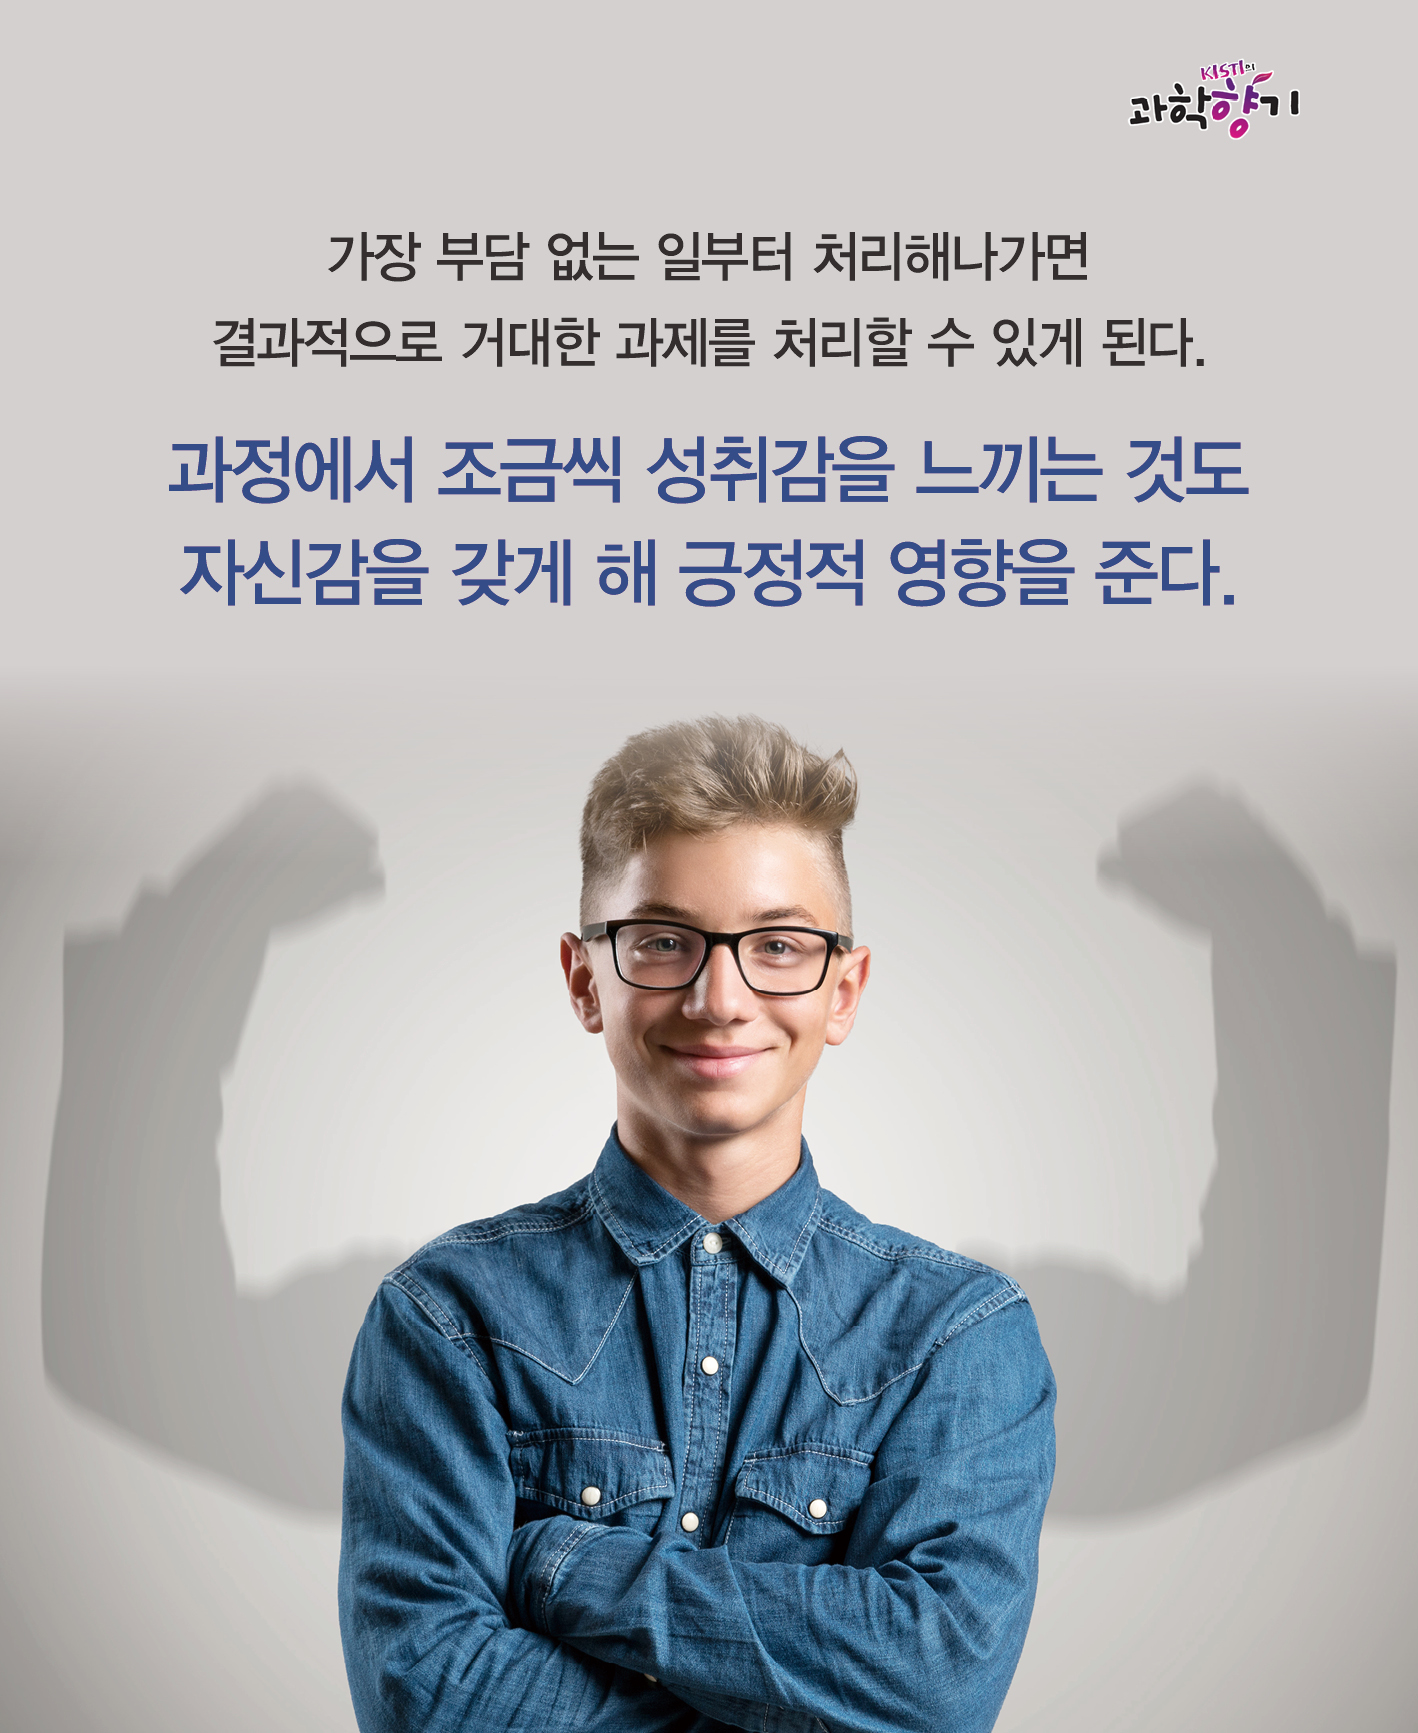 0129 카드뉴스 최종 200dpi 11